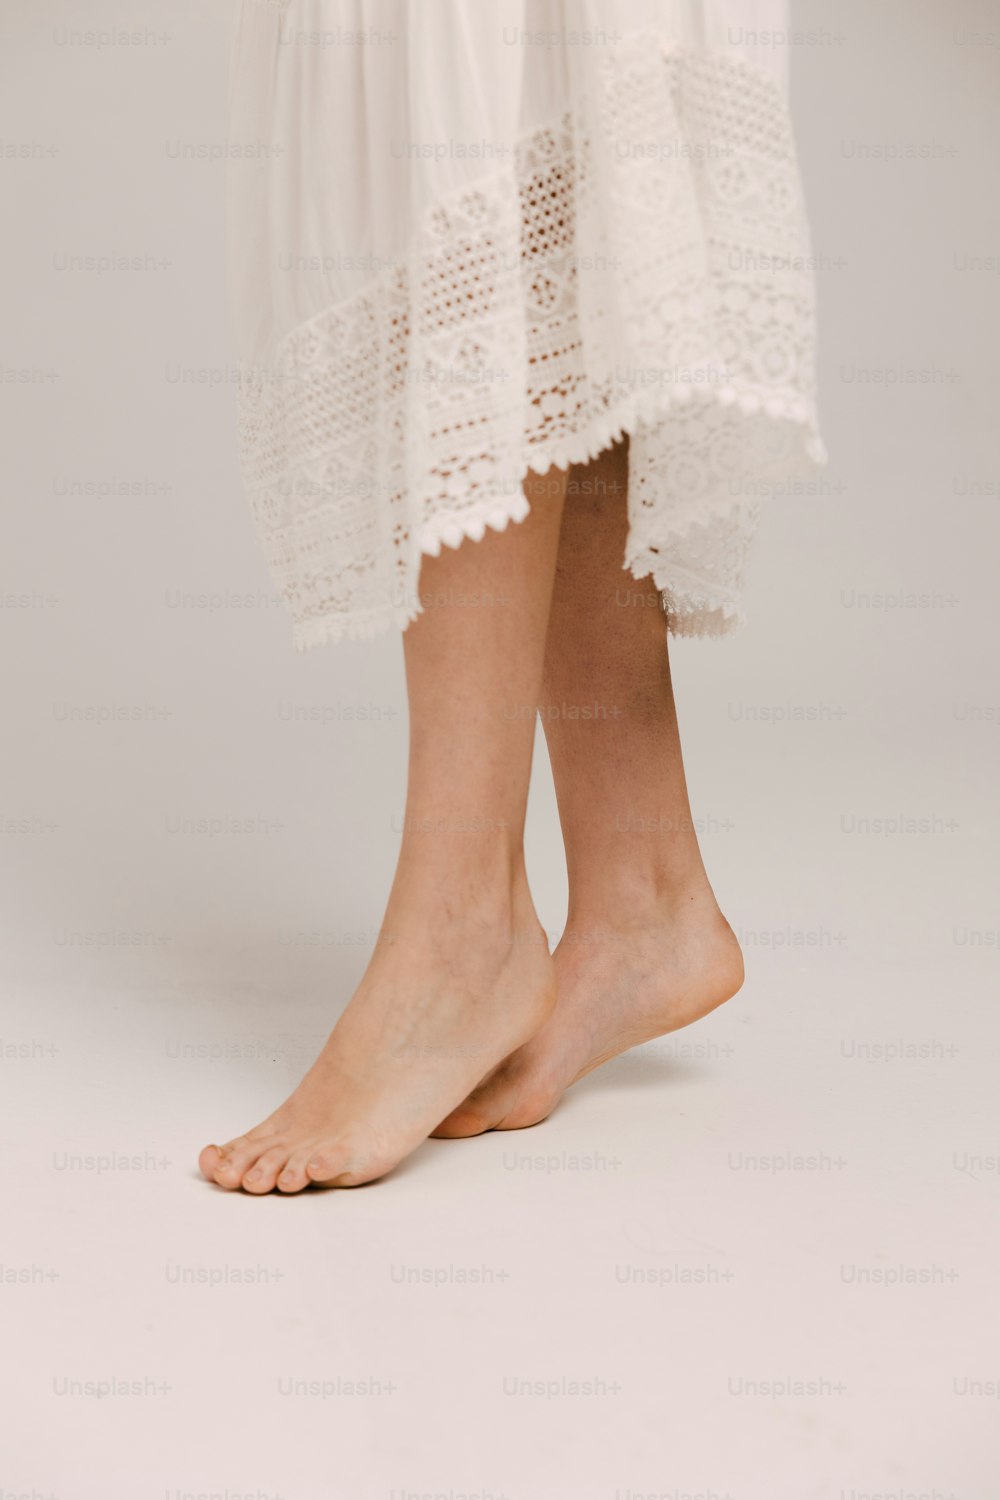 eine Nahaufnahme der Beine einer Person in einem weißen Kleid